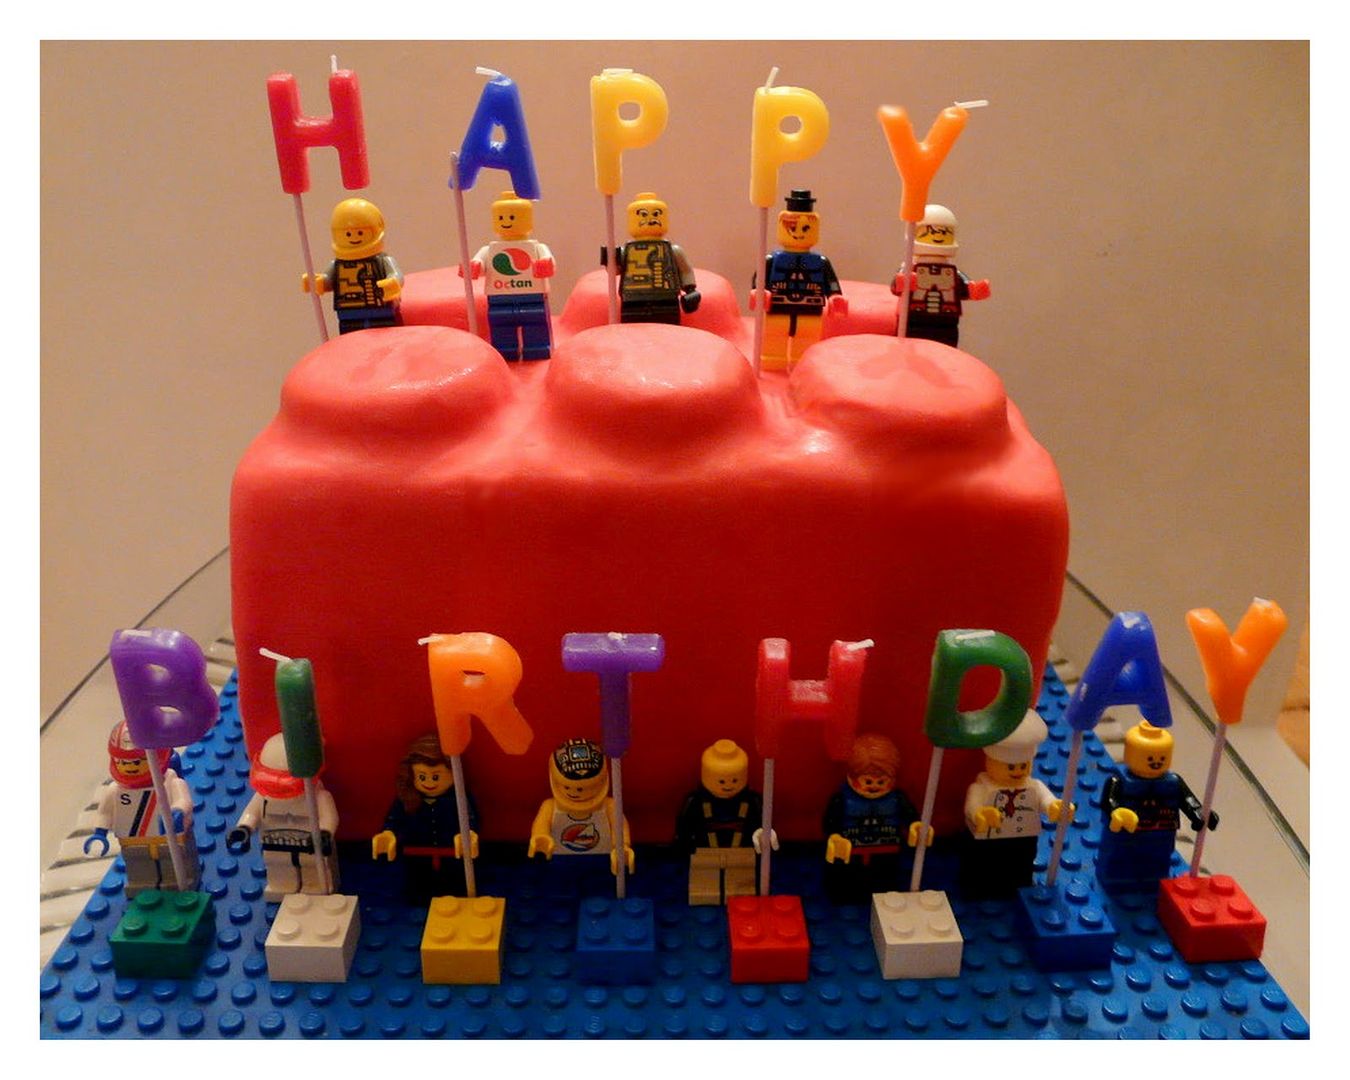 Happy Birthday LEGO cake